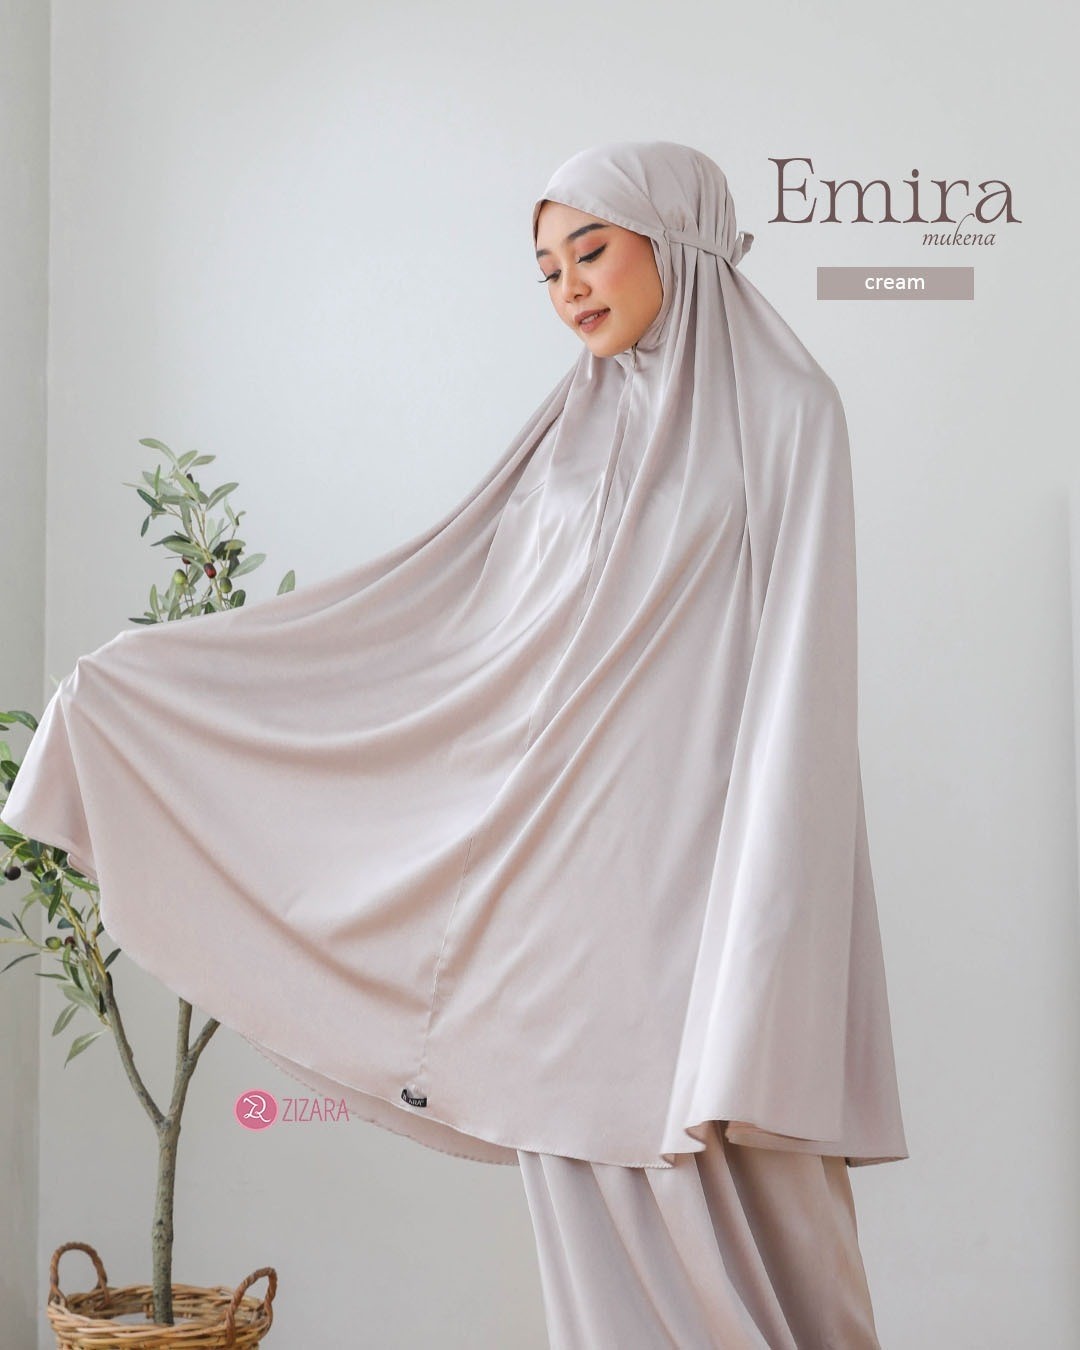 LINE_ALBUM_Emira, Elma_230219_35